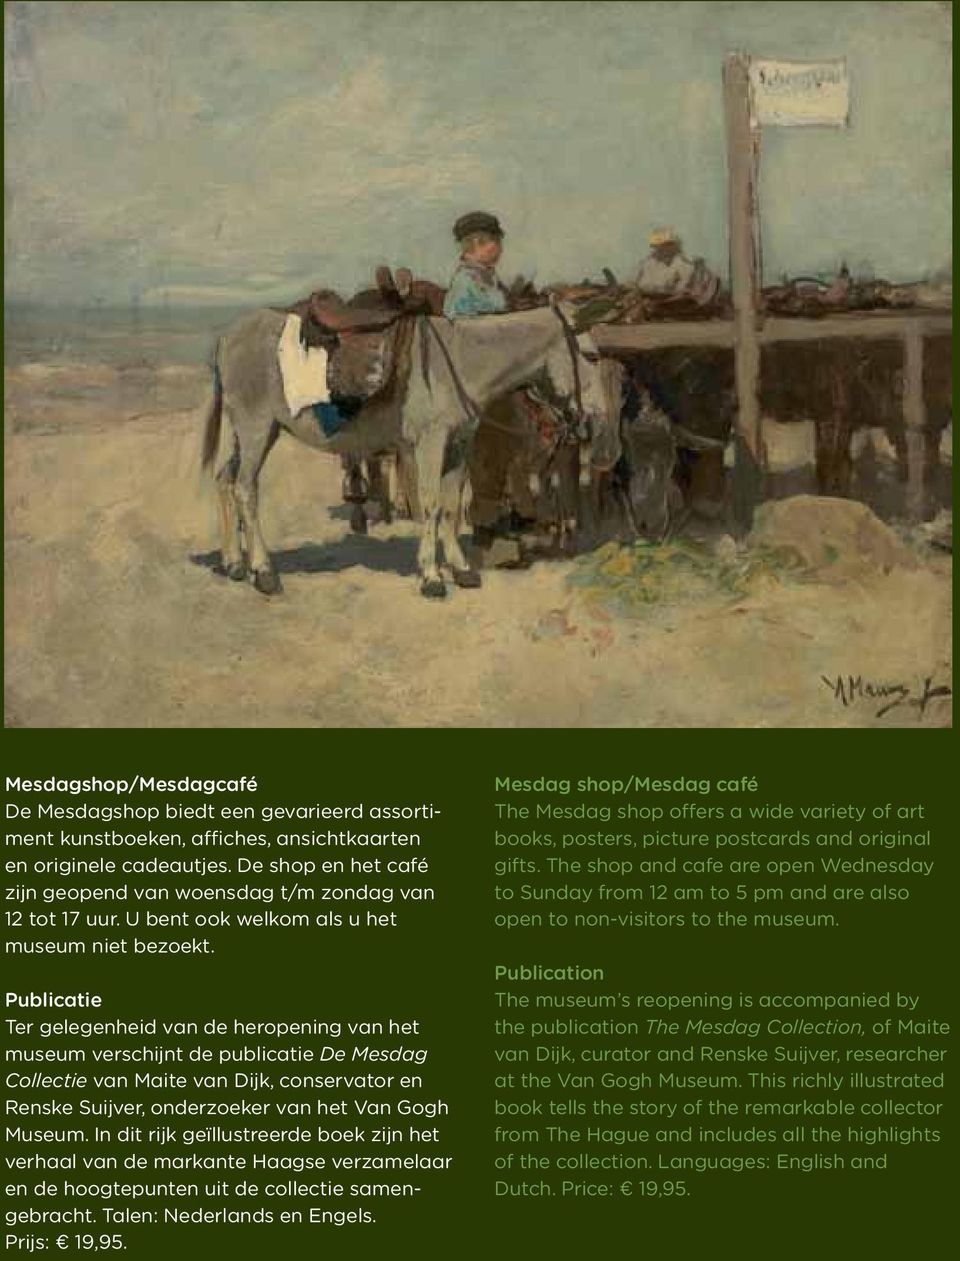 Publicatie Ter gelegenheid van de heropening van het museum verschijnt de publicatie De Mesdag Collectie van Maite van Dijk, conservator en Renske Suijver, onderzoeker van het Van Gogh Museum.